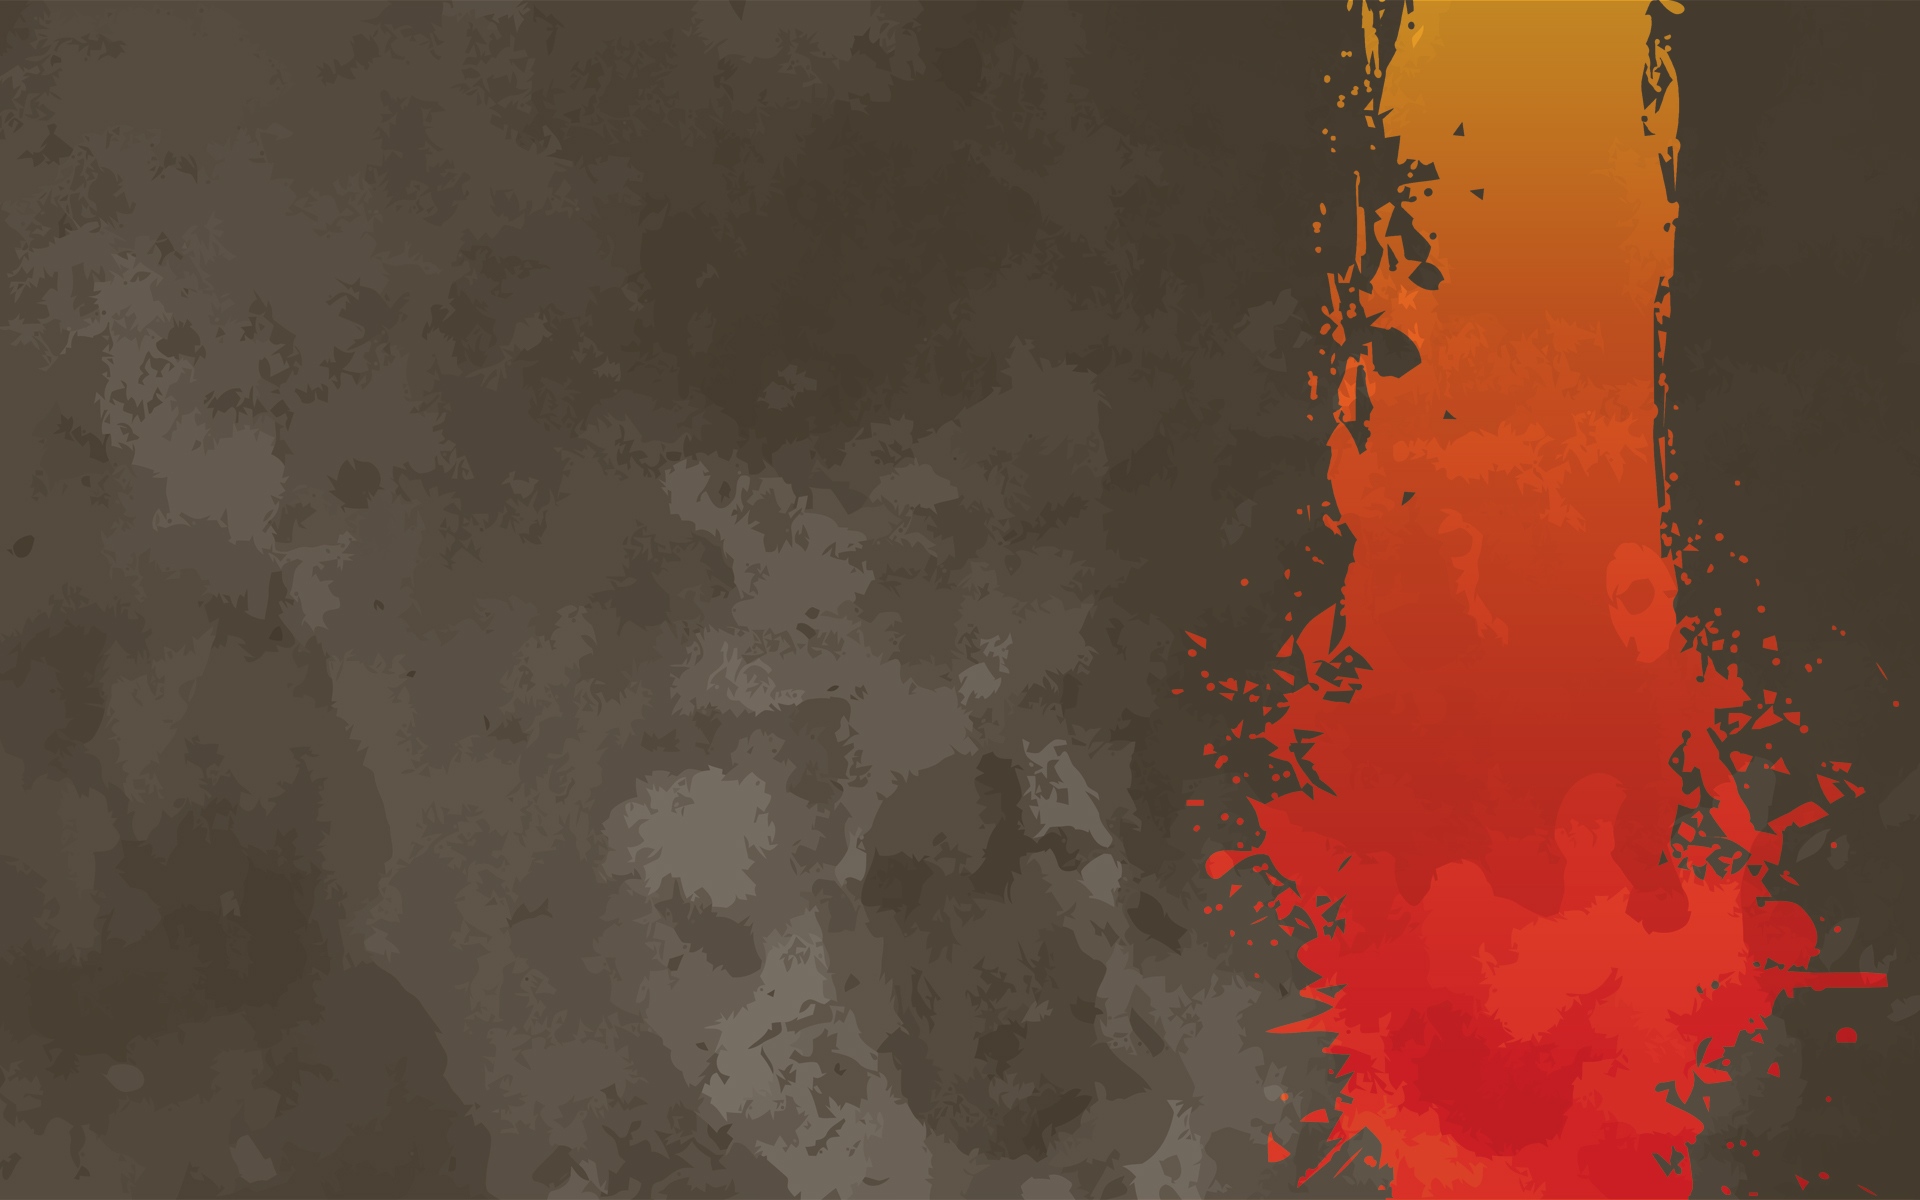 ubuntu wallpaper,red,orange,brown,yellow,pattern